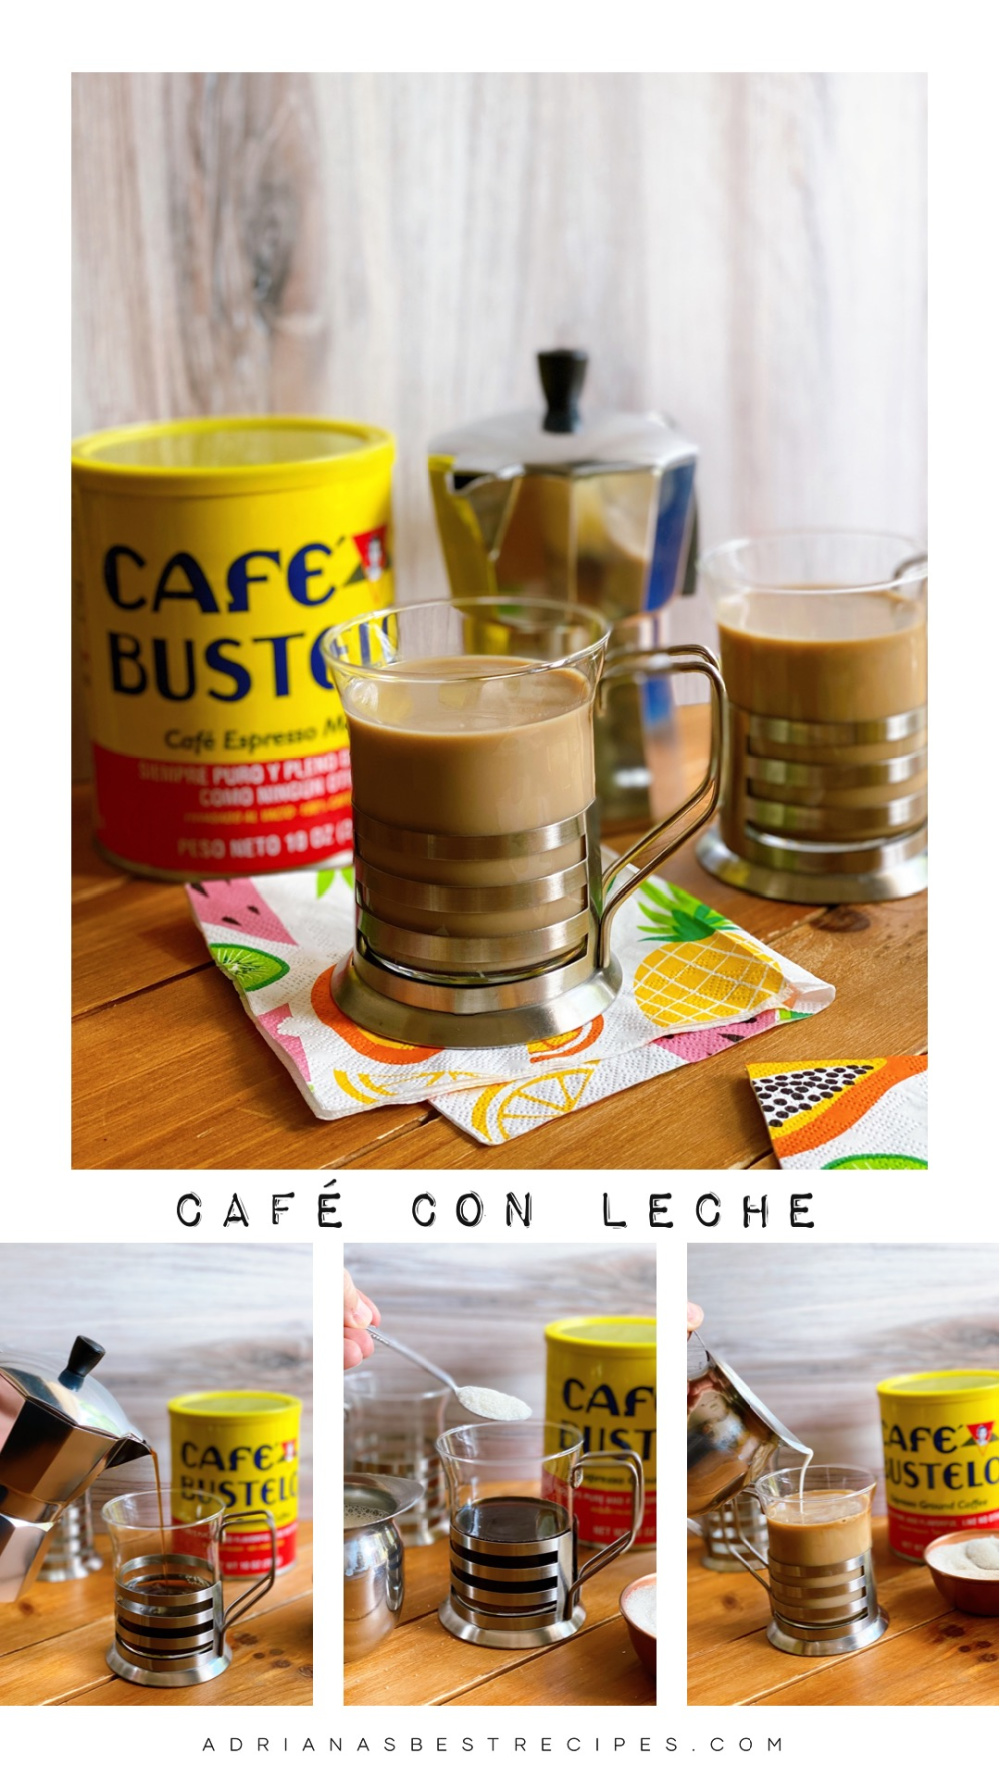 Mostrando los pasos de cómo hacer café con leche al estilo cubano